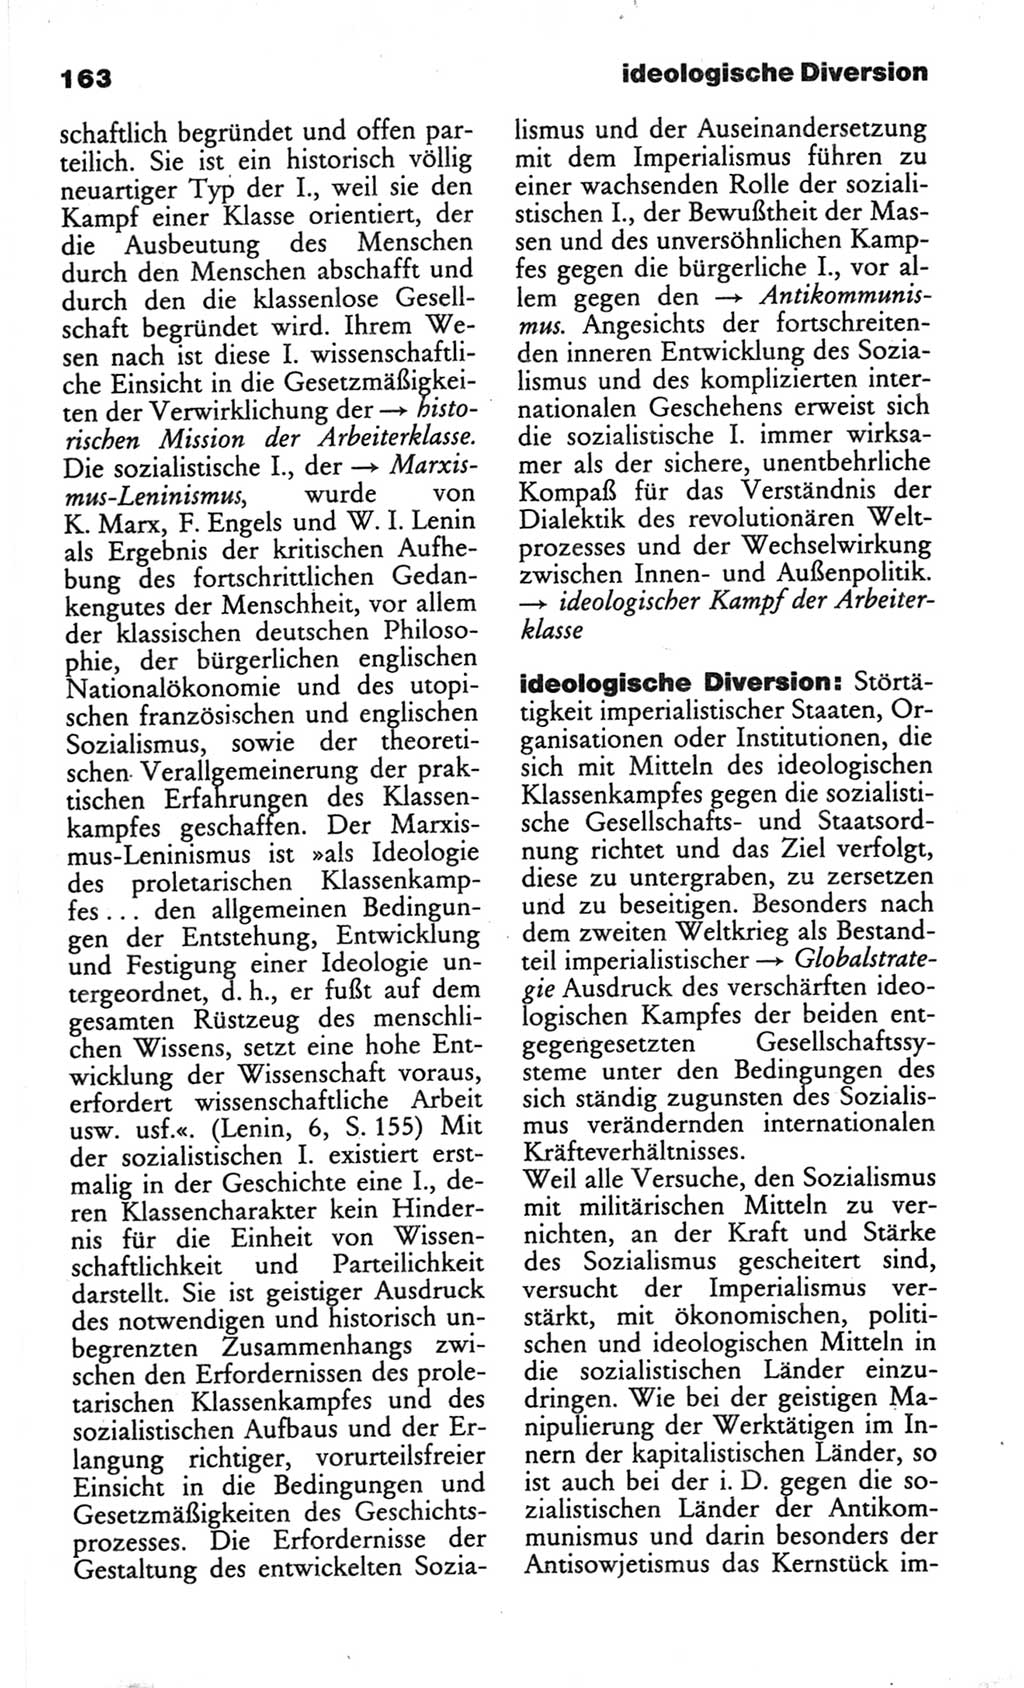 Wörterbuch des wissenschaftlichen Kommunismus [Deutsche Demokratische Republik (DDR)] 1982, Seite 163 (Wb. wiss. Komm. DDR 1982, S. 163)